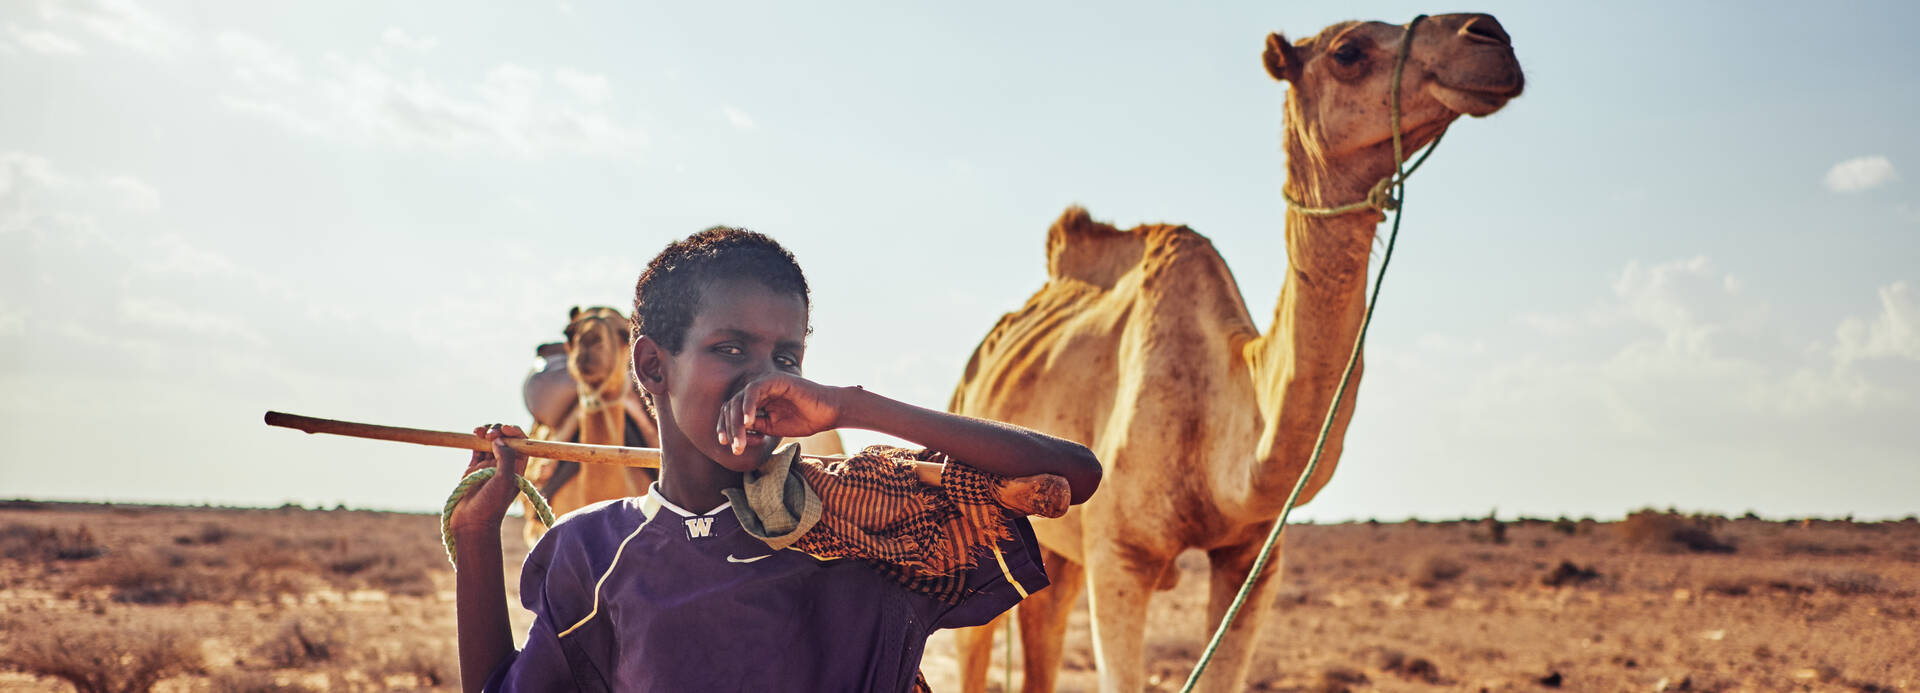 Junge in Somalia steht mit seinem Kamel in der Wüste.